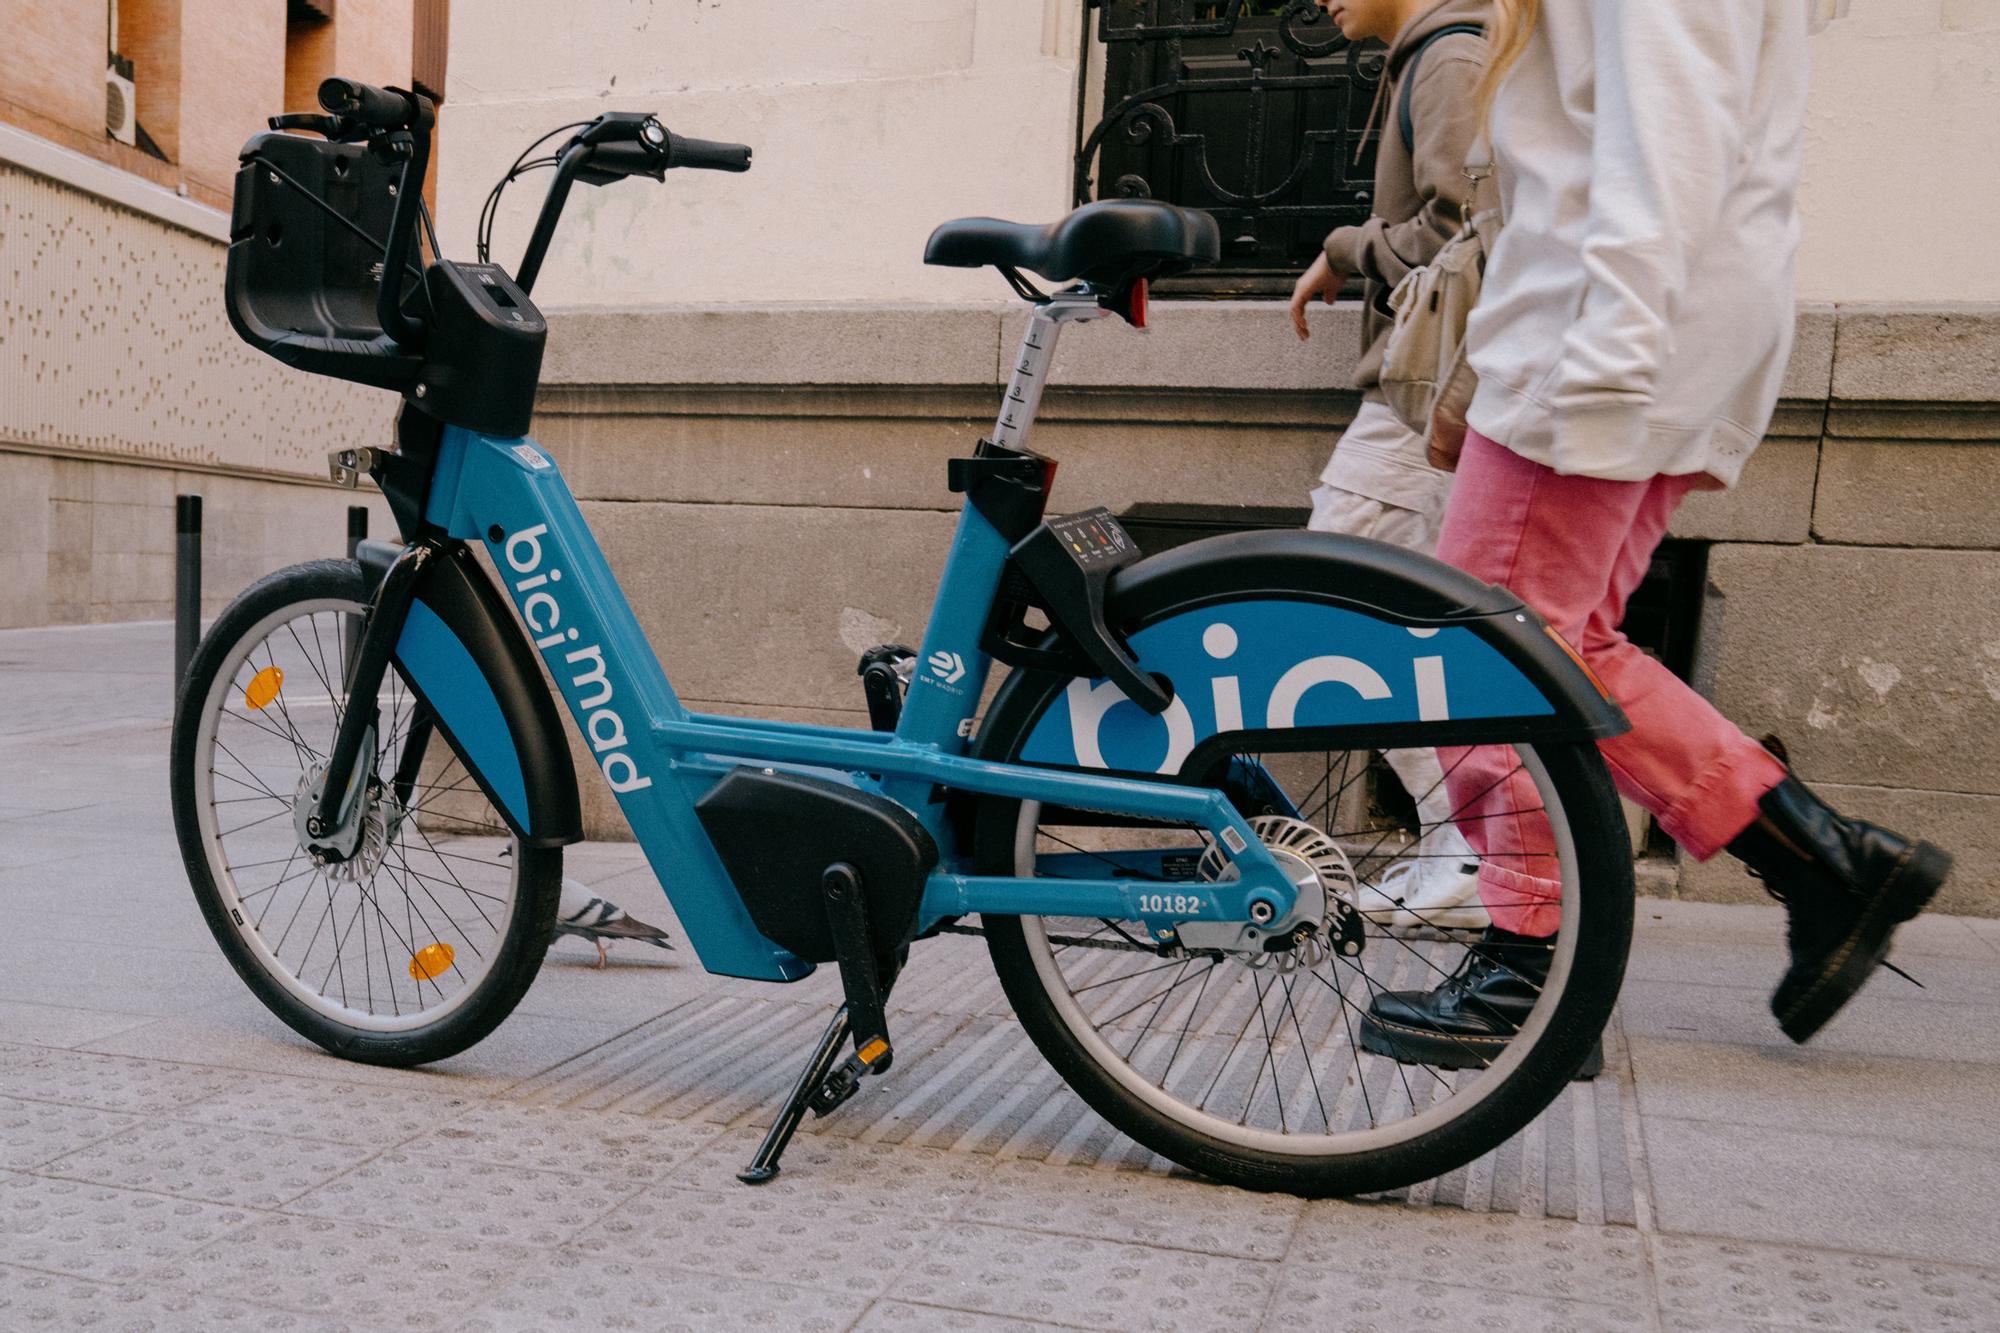 27.03.2023. MADRID. Una de las nuevas bicicletas del servicio BiciMad en Madrid, abandonada en la calle. Foto: Alba Vigaray